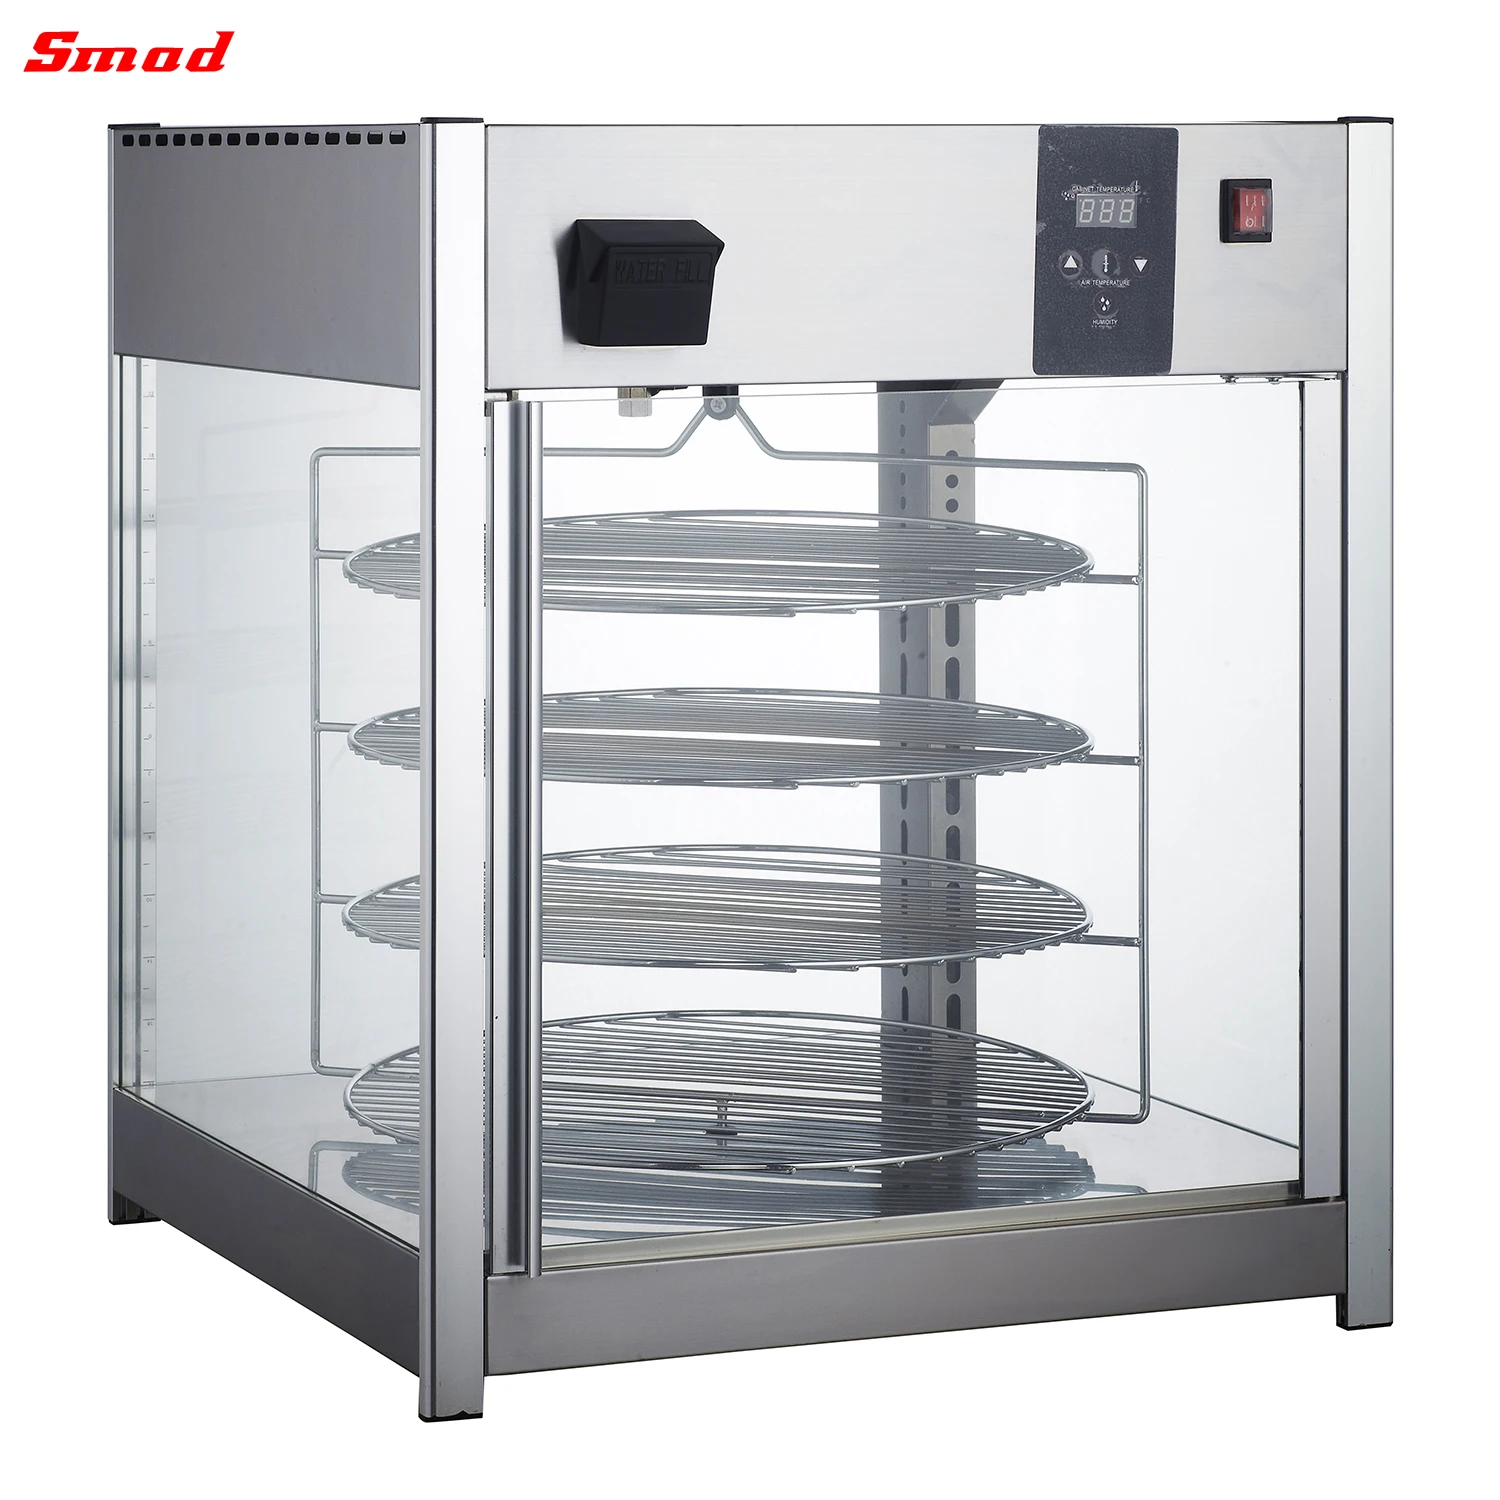 Температура хранения горячих продуктов на тепловой витрине и в тепловом шкафу